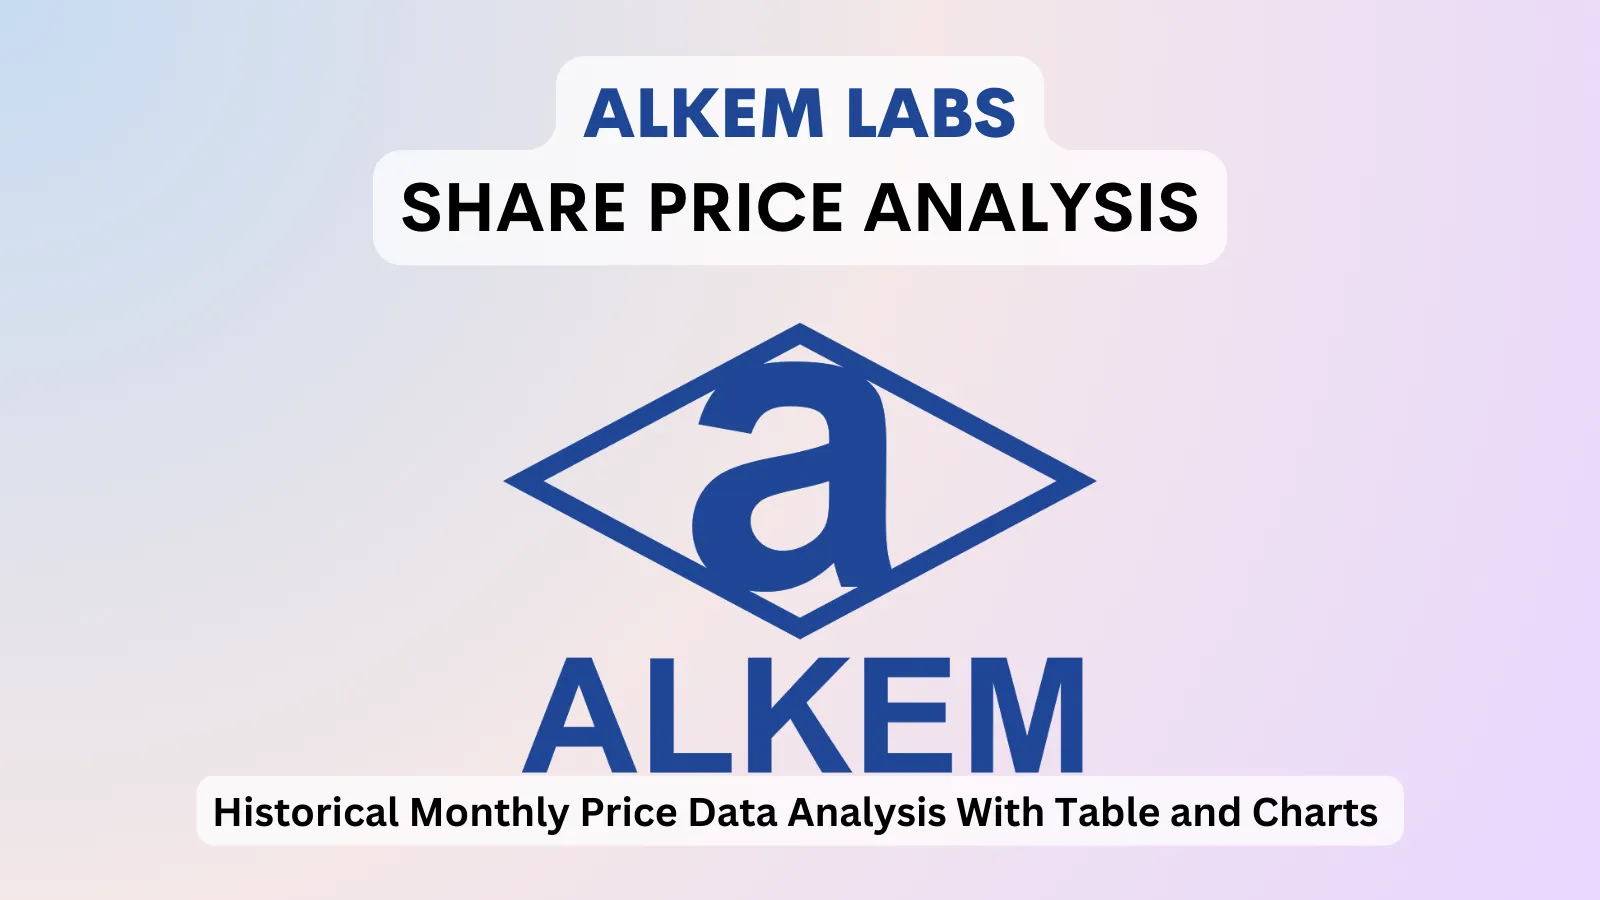 Alkem Labs share price analysis